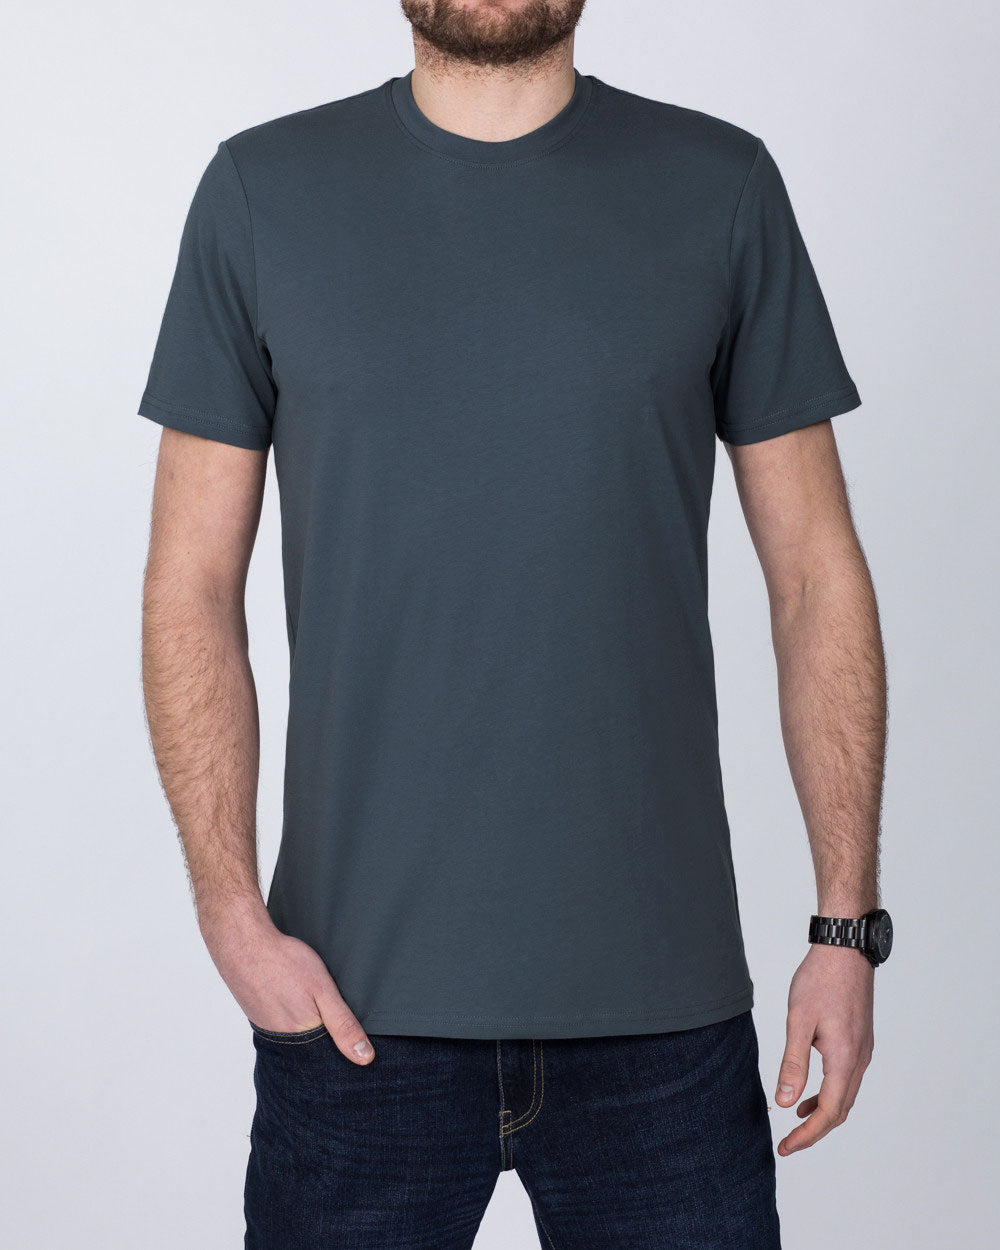 Girav Sydney Extra Tall T-Shirt (dark grey)